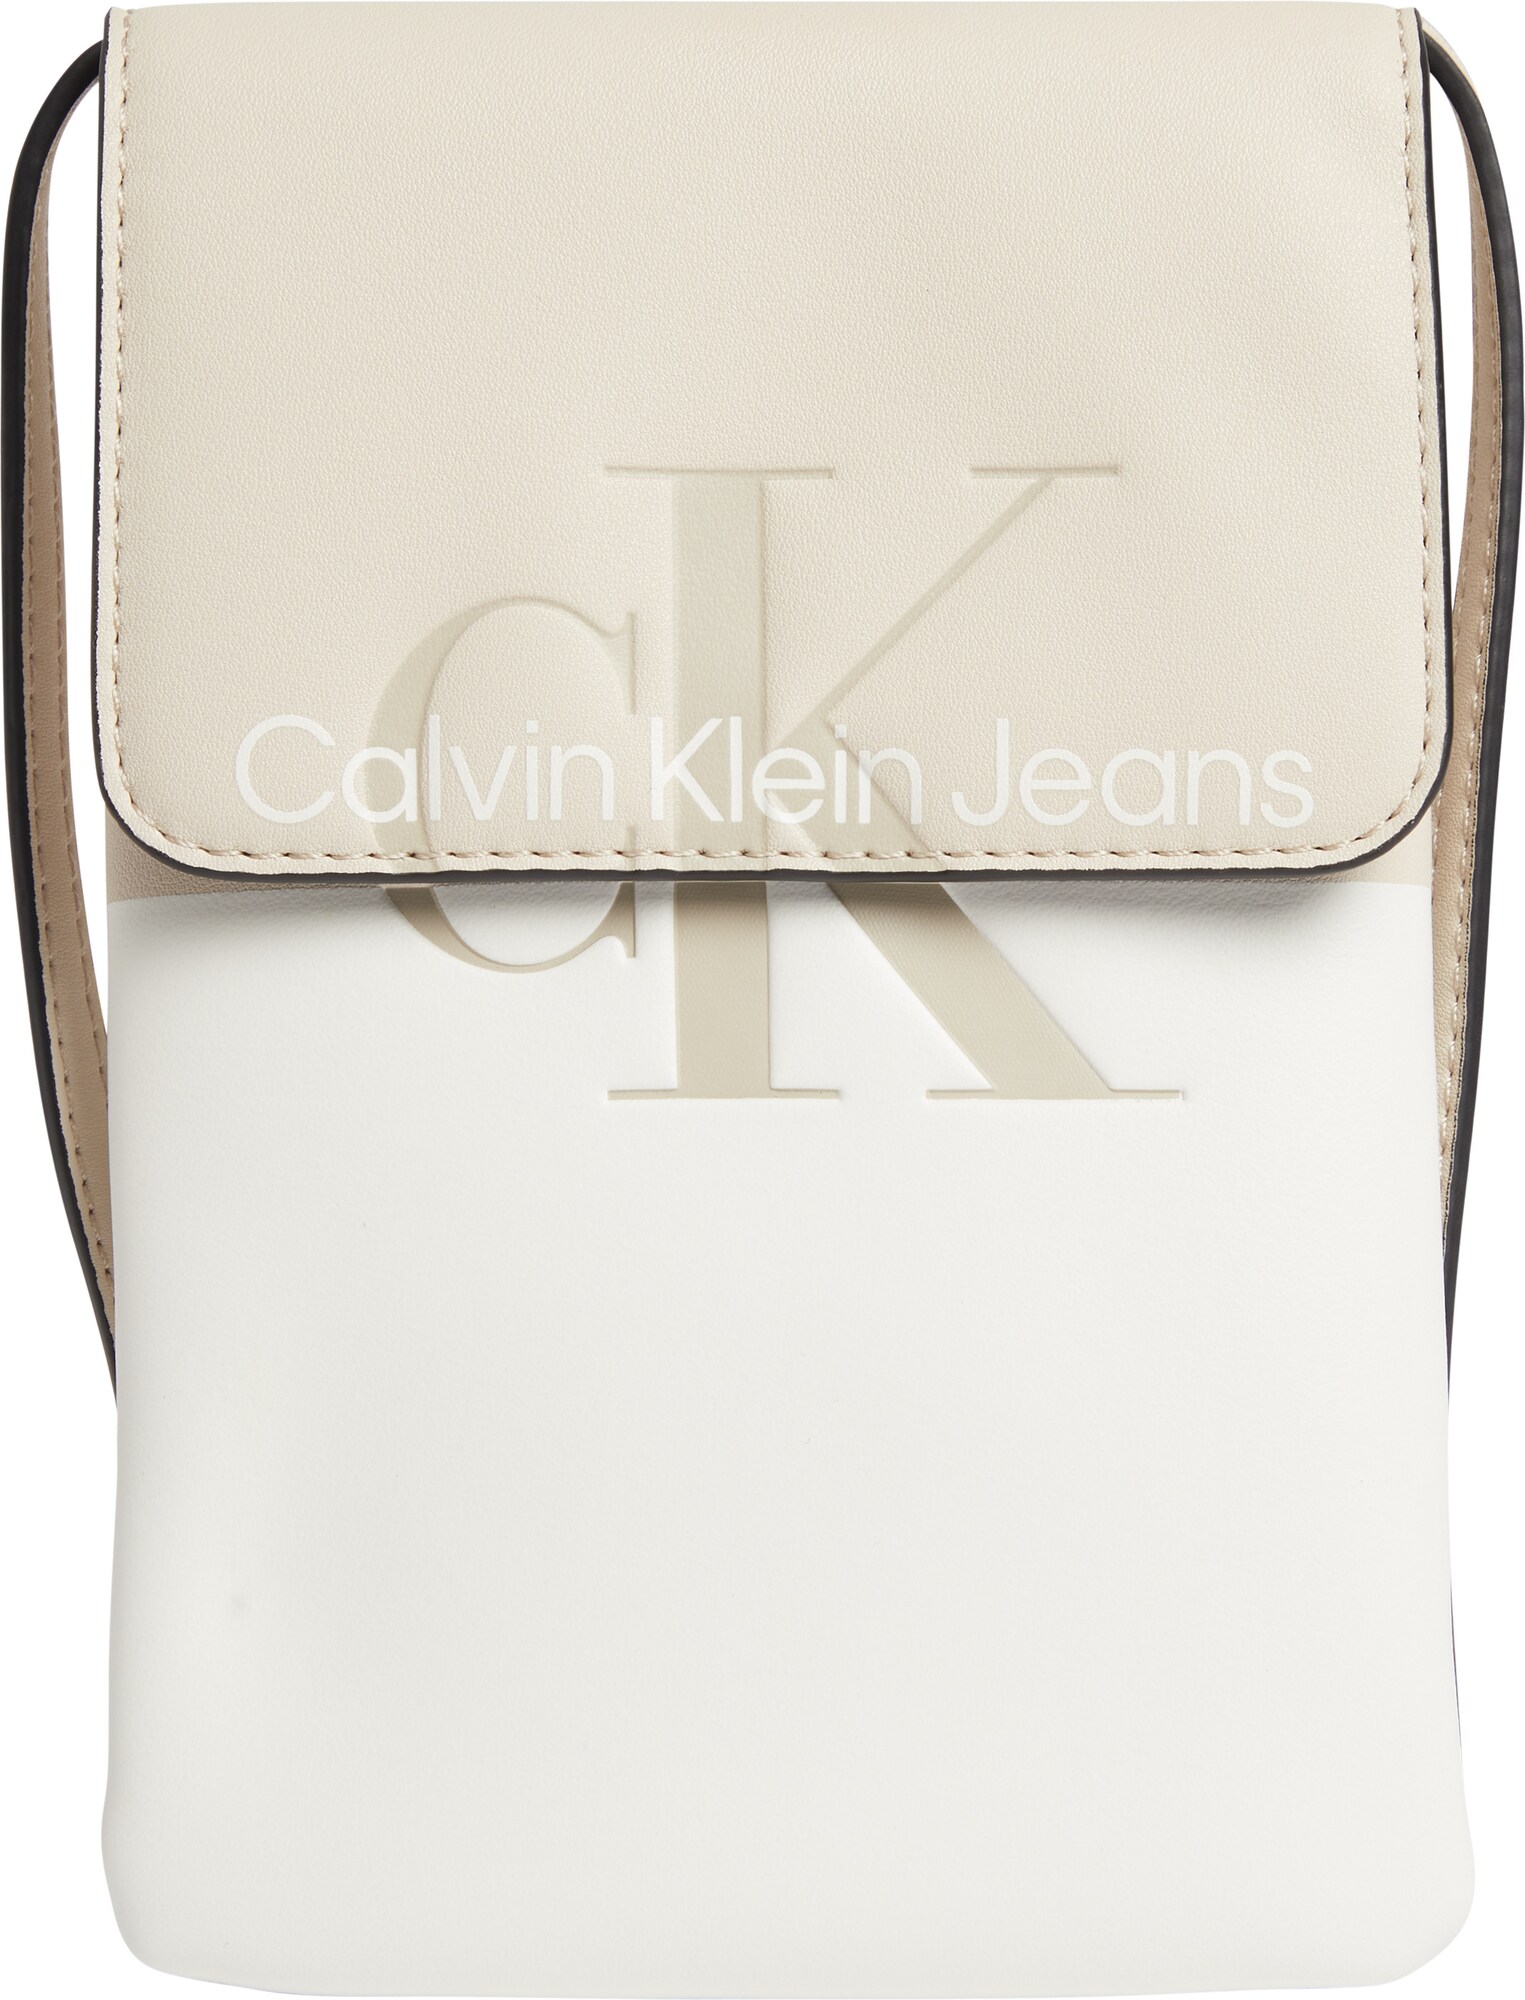 Calvin Klein Jeans Umhngetasche beige / wei